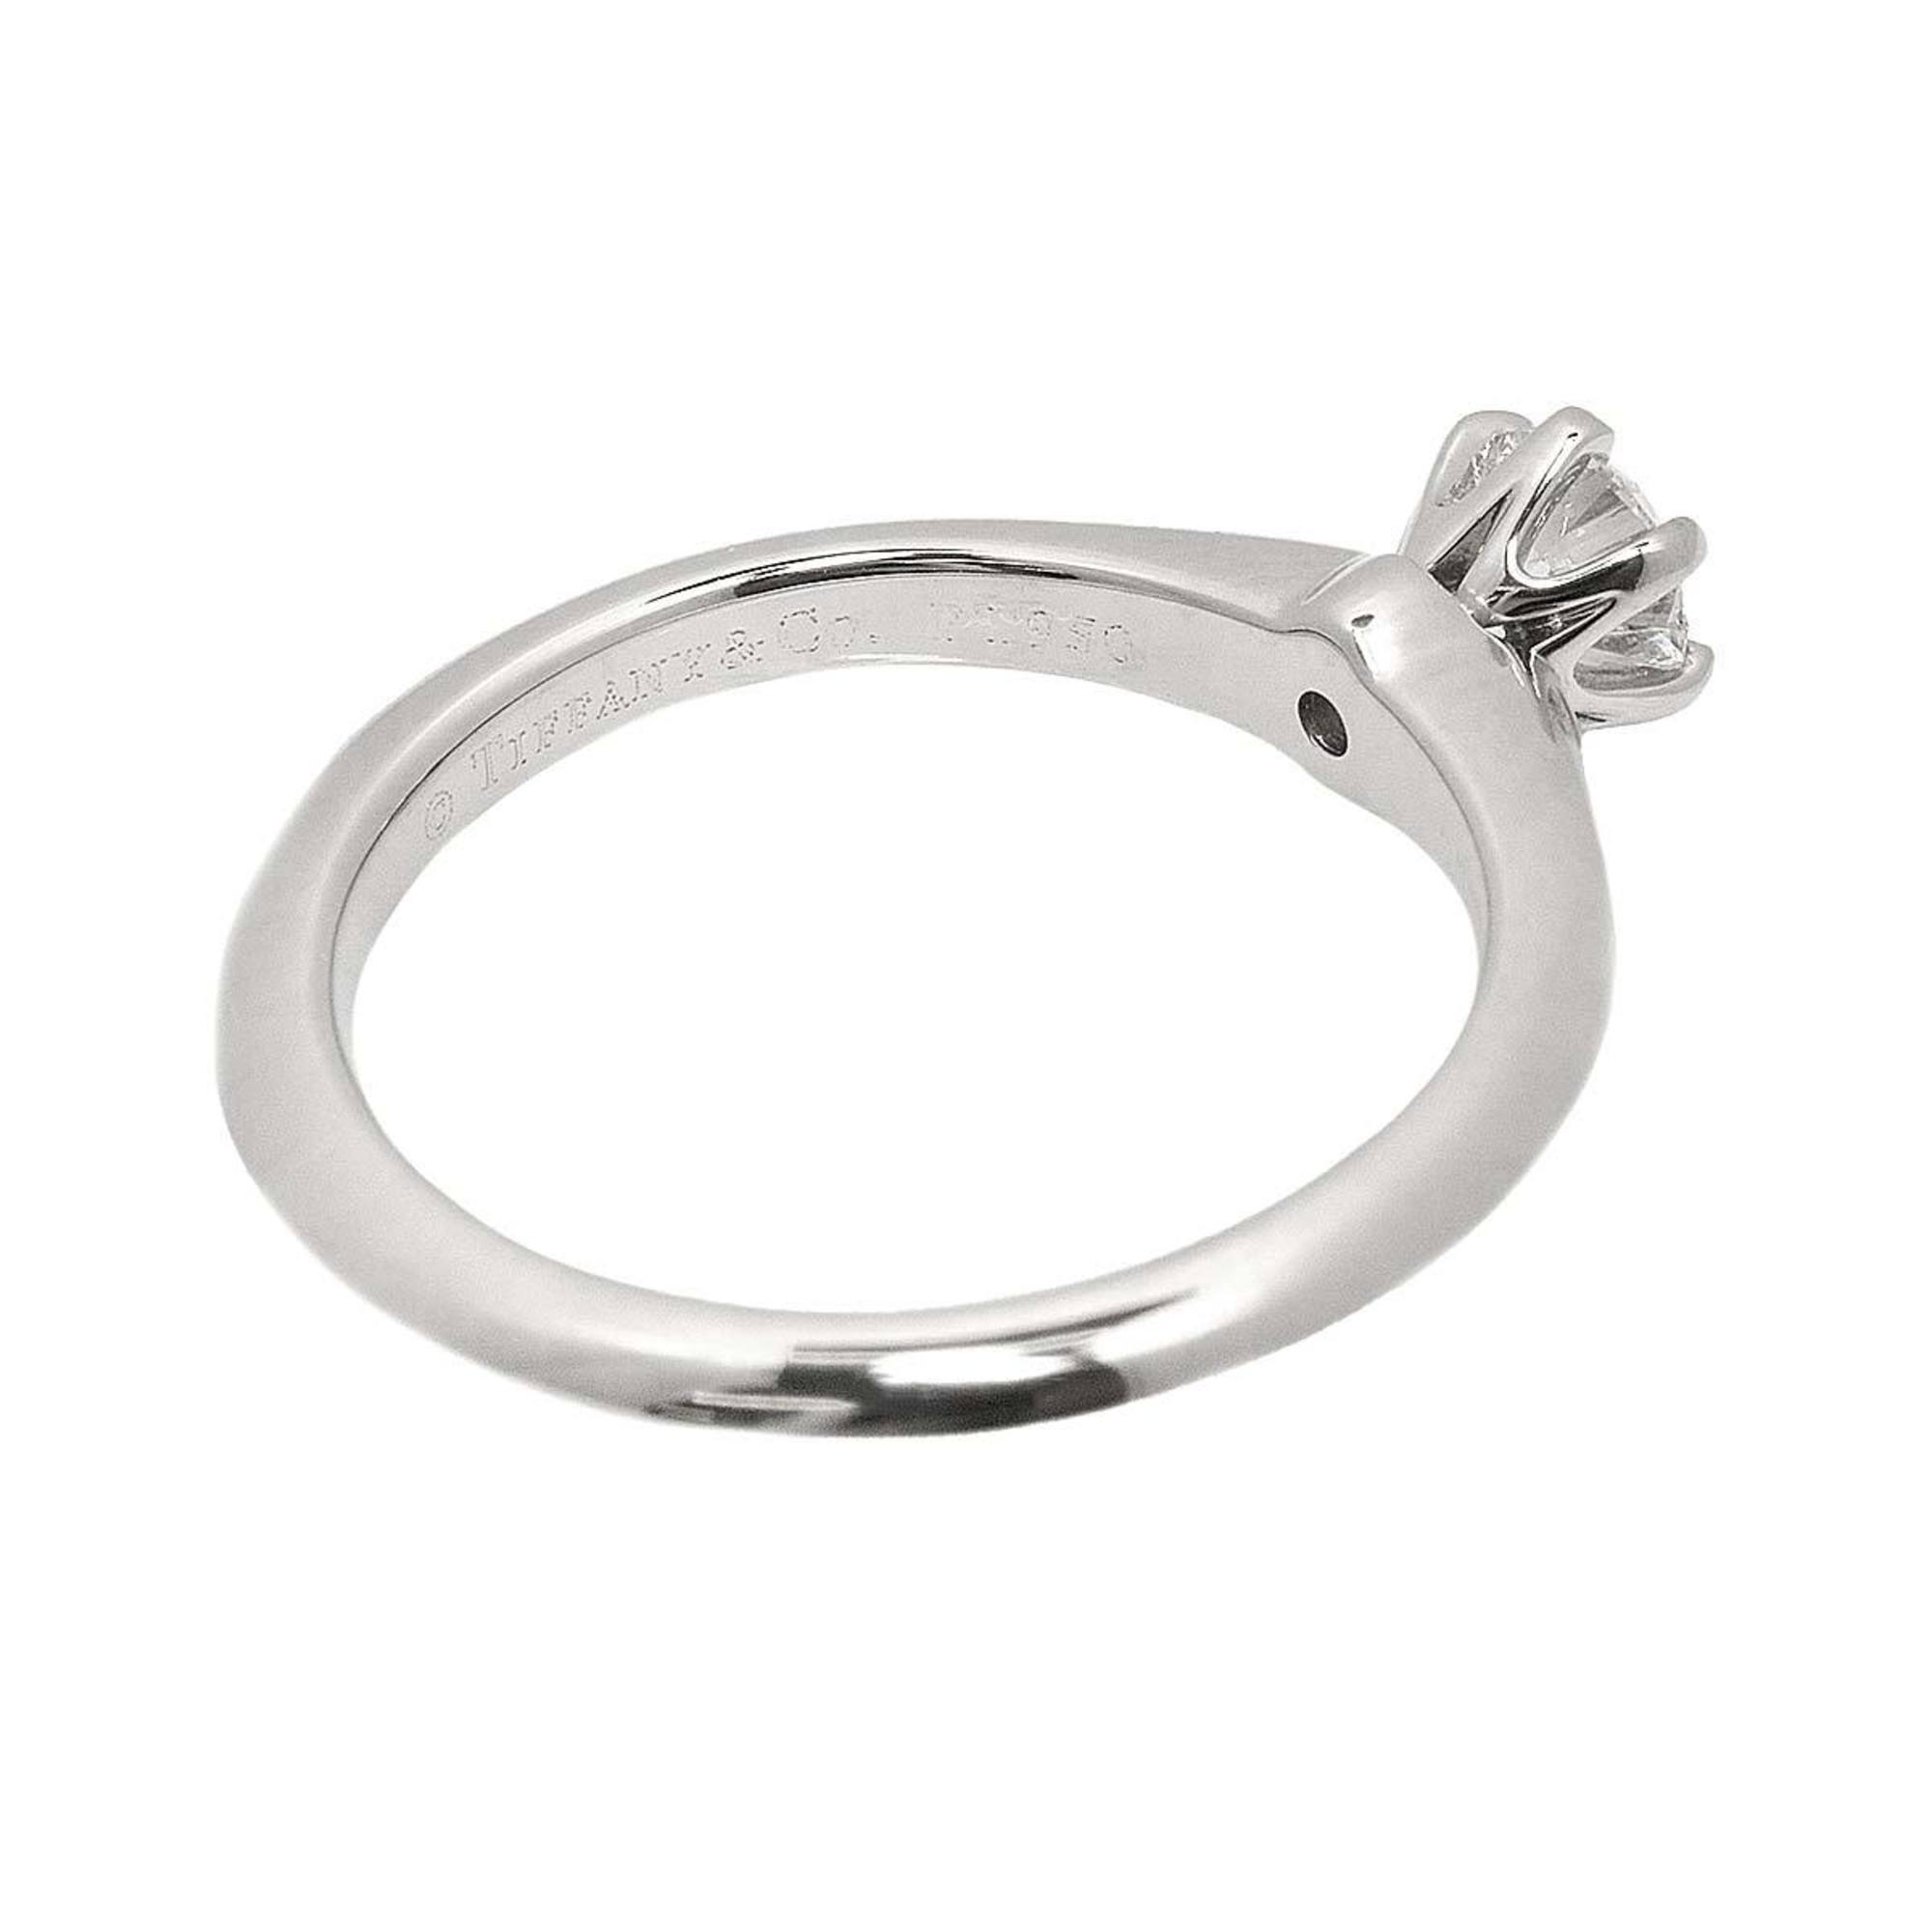 Tiffany & Co. Solitaire Diamond 0.26ct H VS2 3EX Ring Pt Platinum